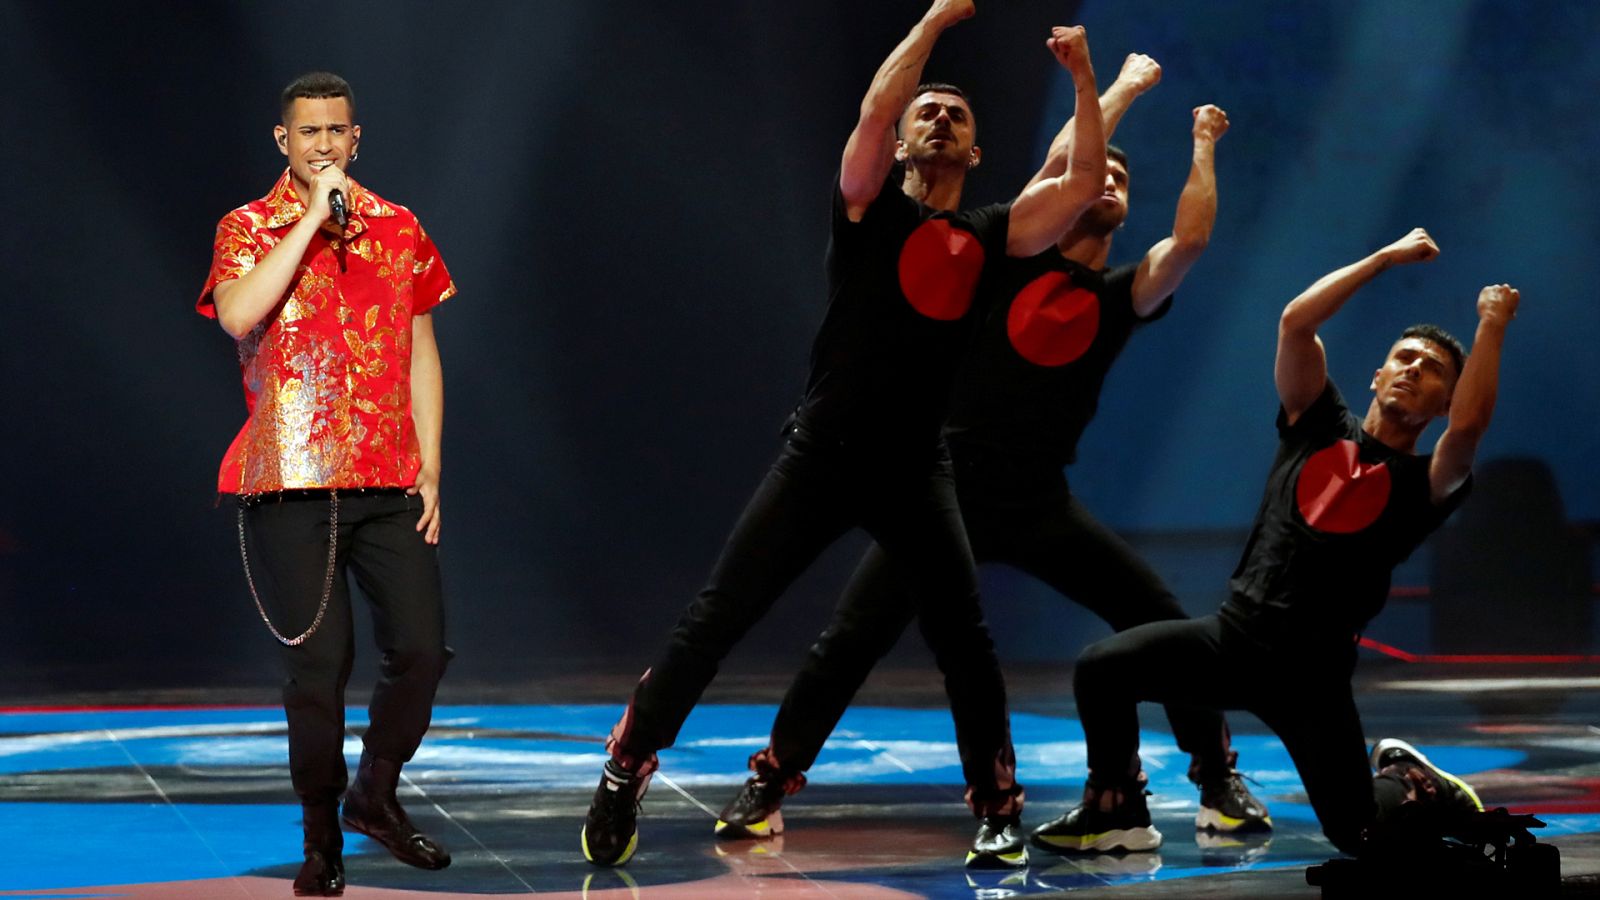 Eurovisión 2019 - Italia: Mahmoud canta "Soldi" en la final